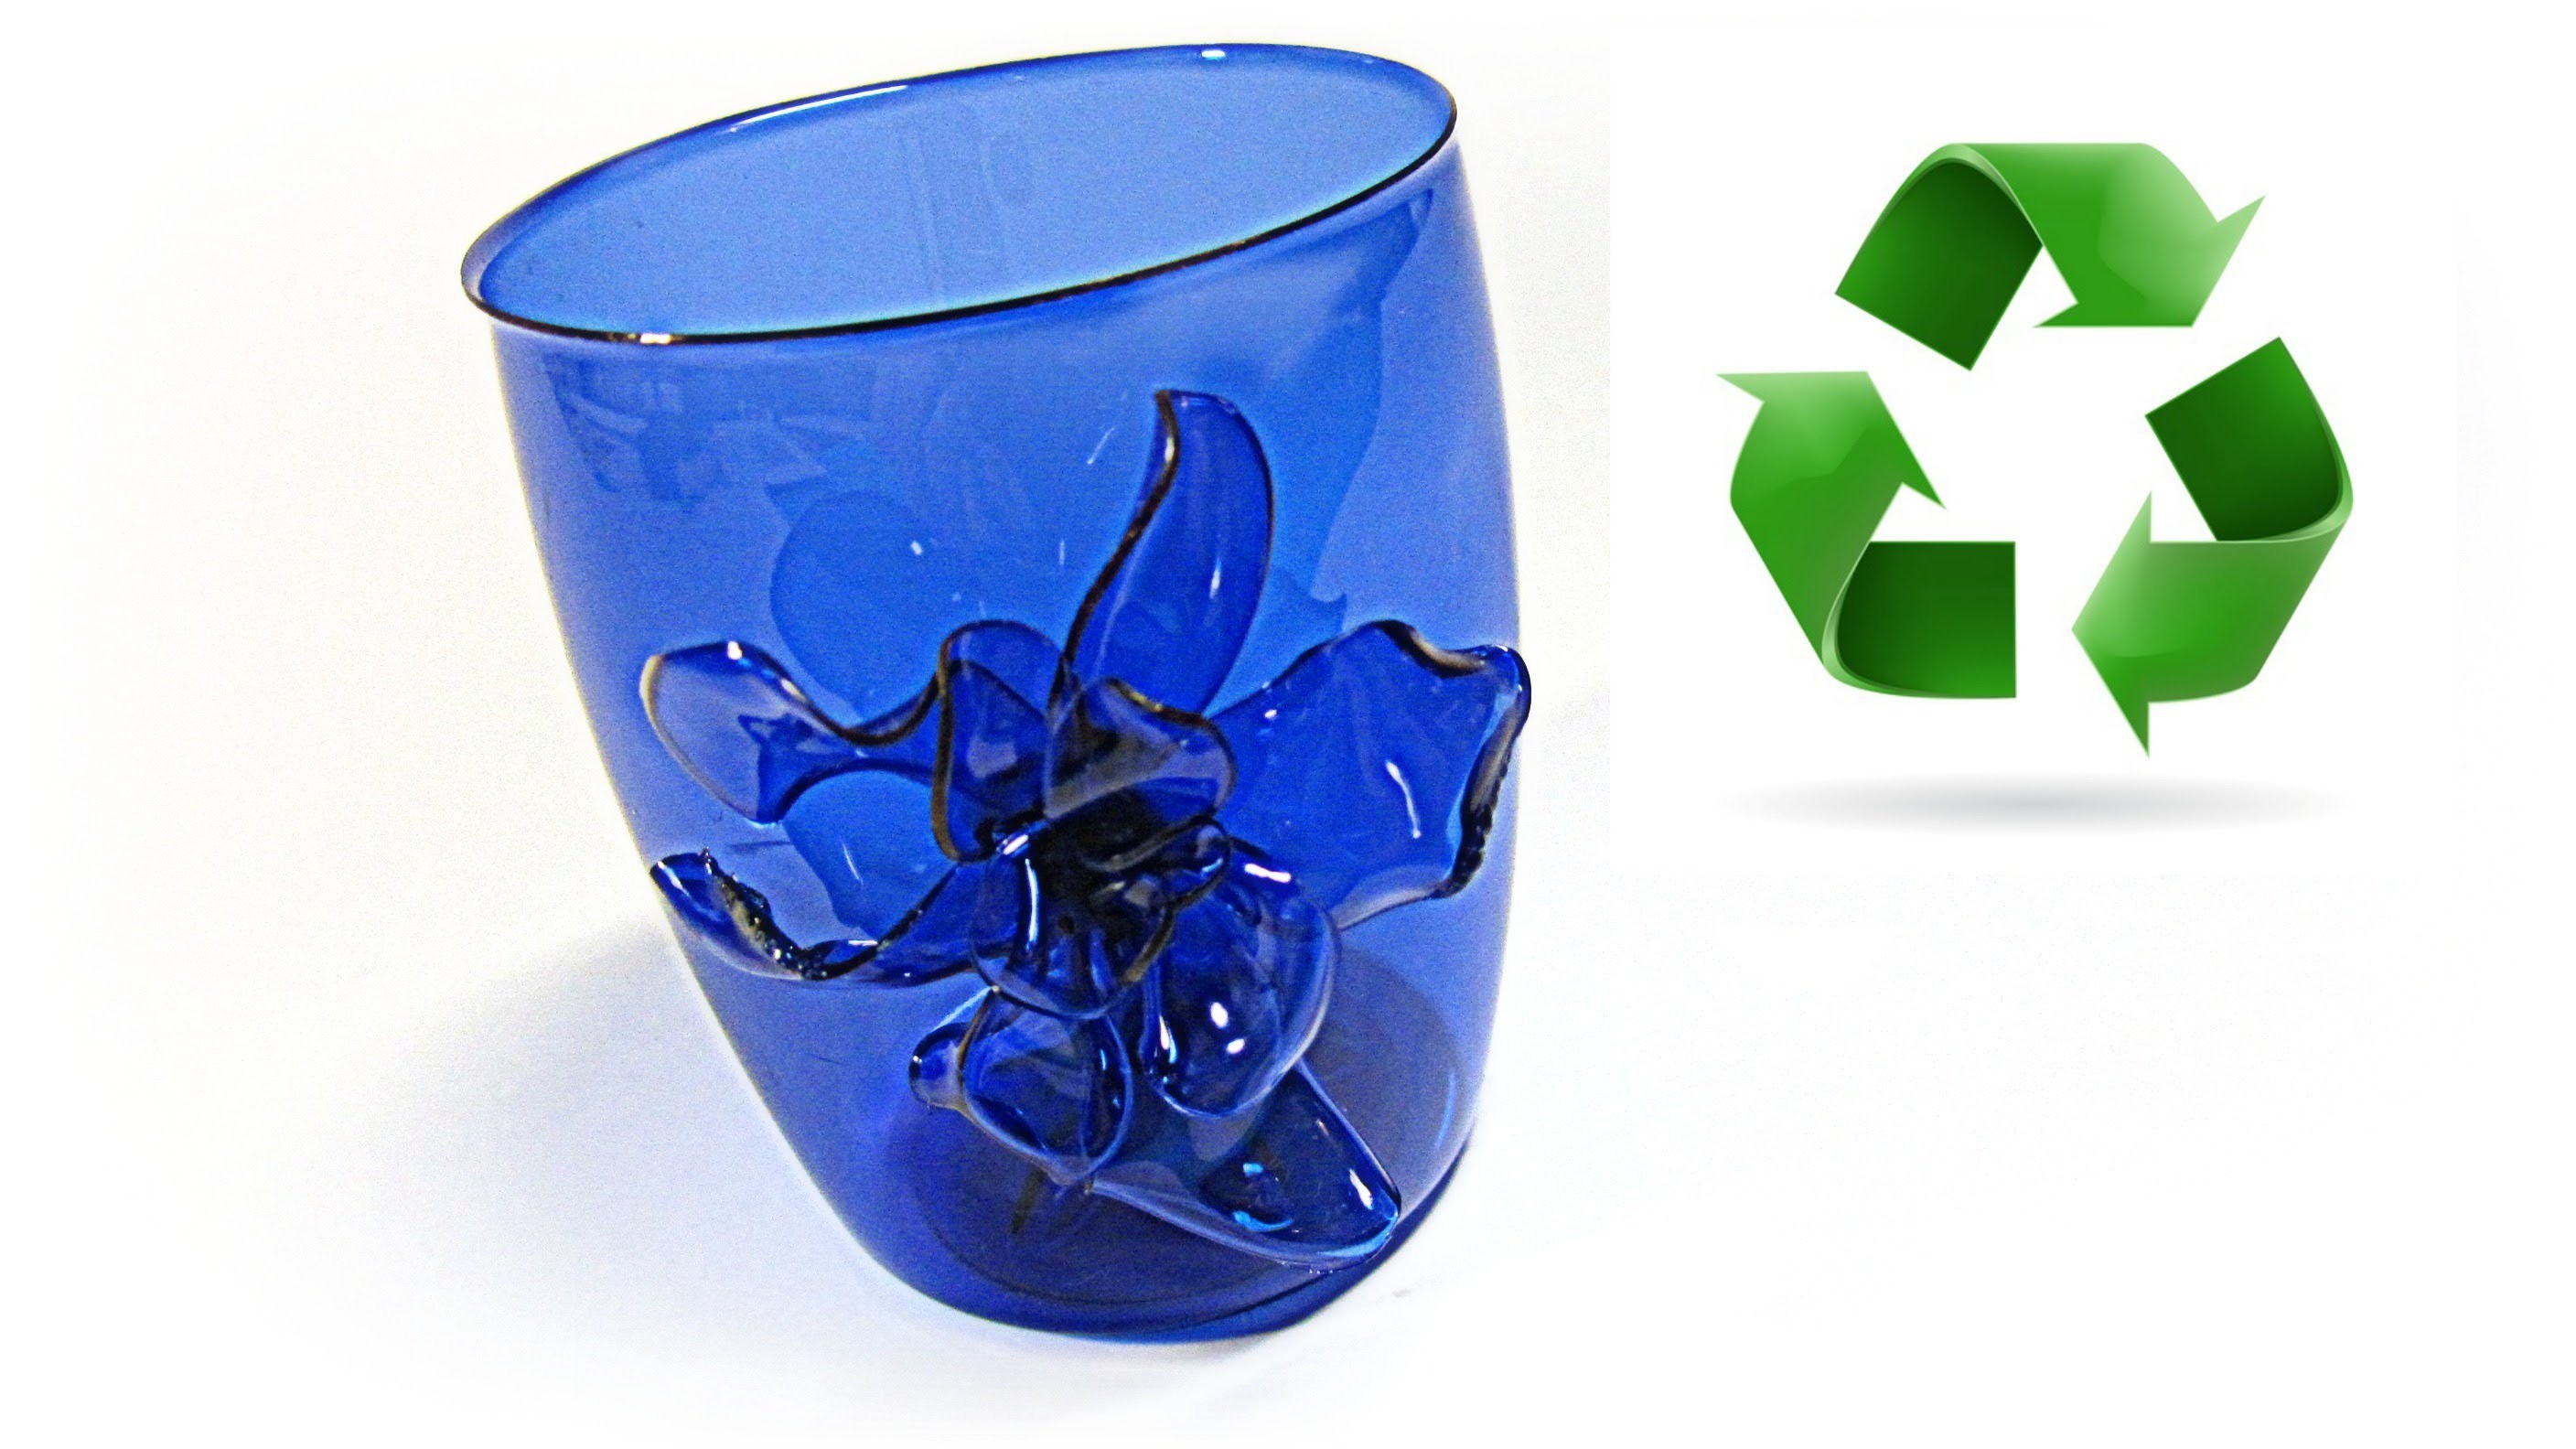 Cómo reciclar envases de plástico. Recycled plastic containers.